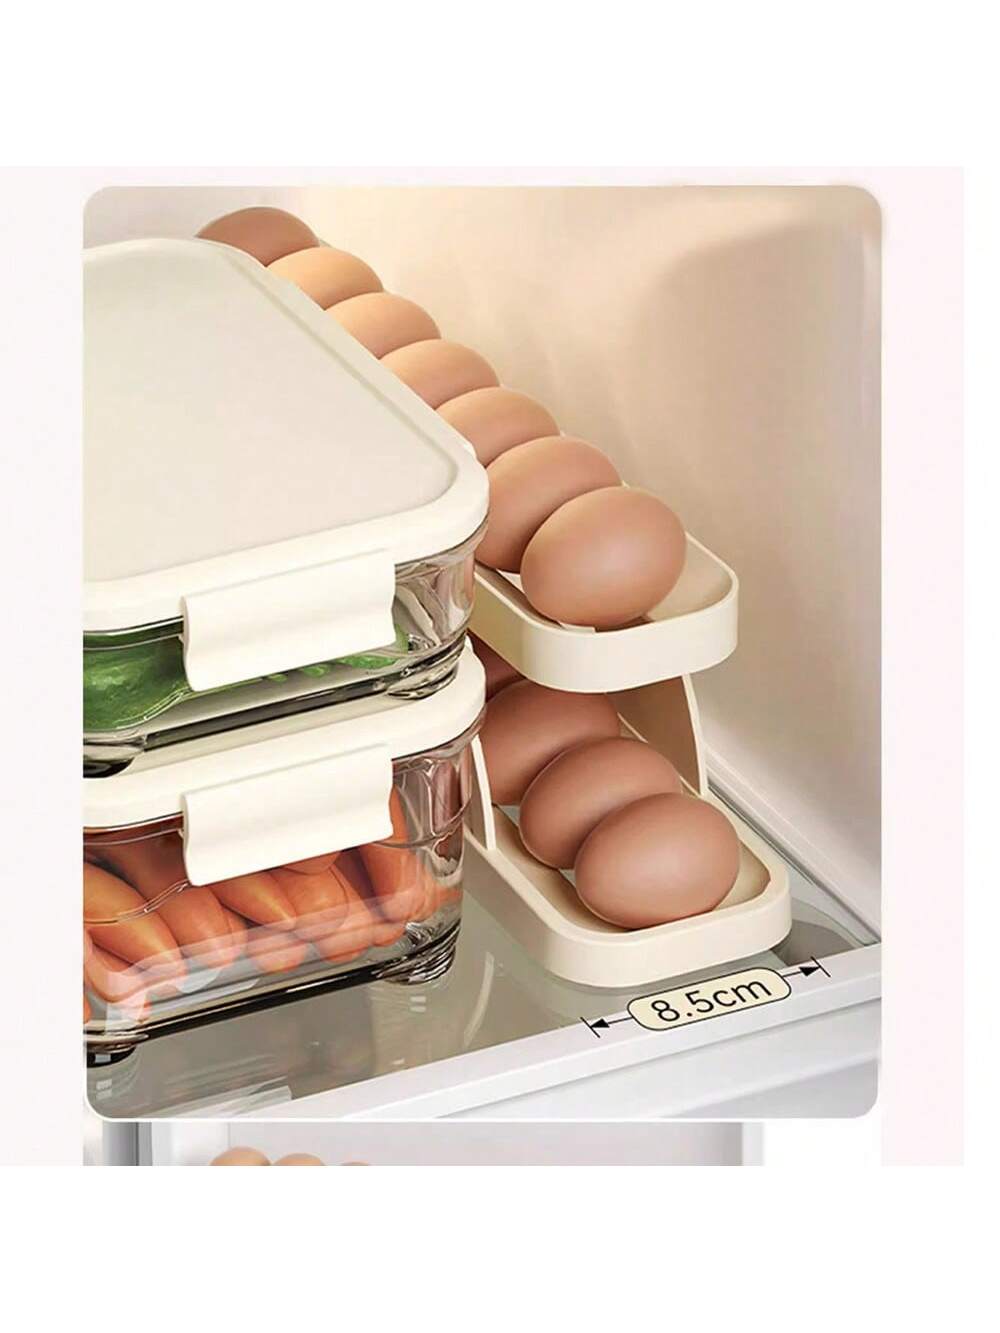 (1PC )Egg Holder For Refrigerator,2 Tier Auto Rolling Egg Dispenser Holder 15 Eggs,Space Saving Egg Storage For Fridge & Countertop,Roll Down Slide Ramp Track,Creamy White-Beige-5